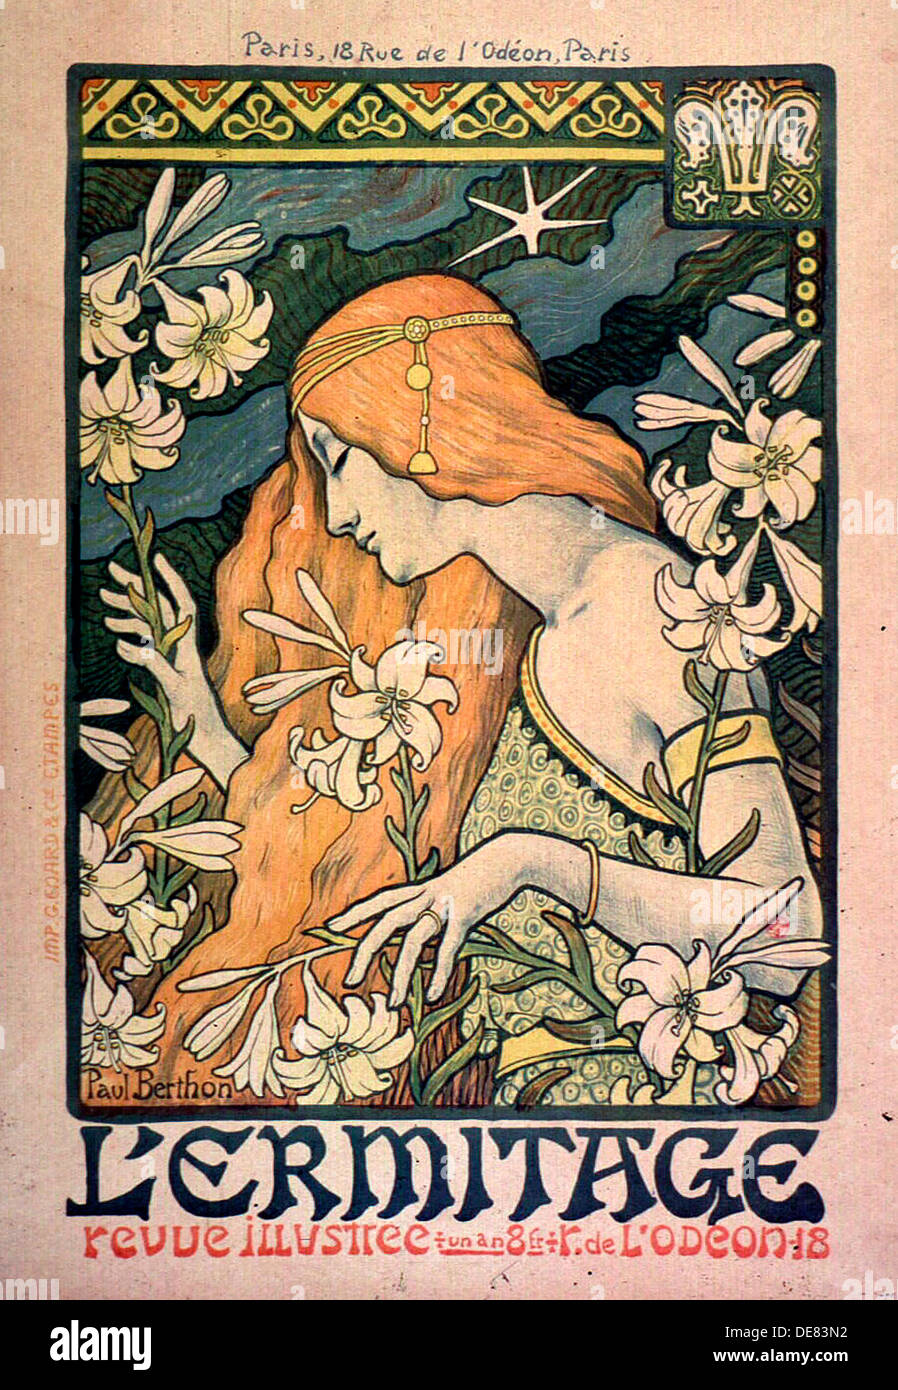 L'Ermitage, revue illustrée, poster, 1897. Foto Stock